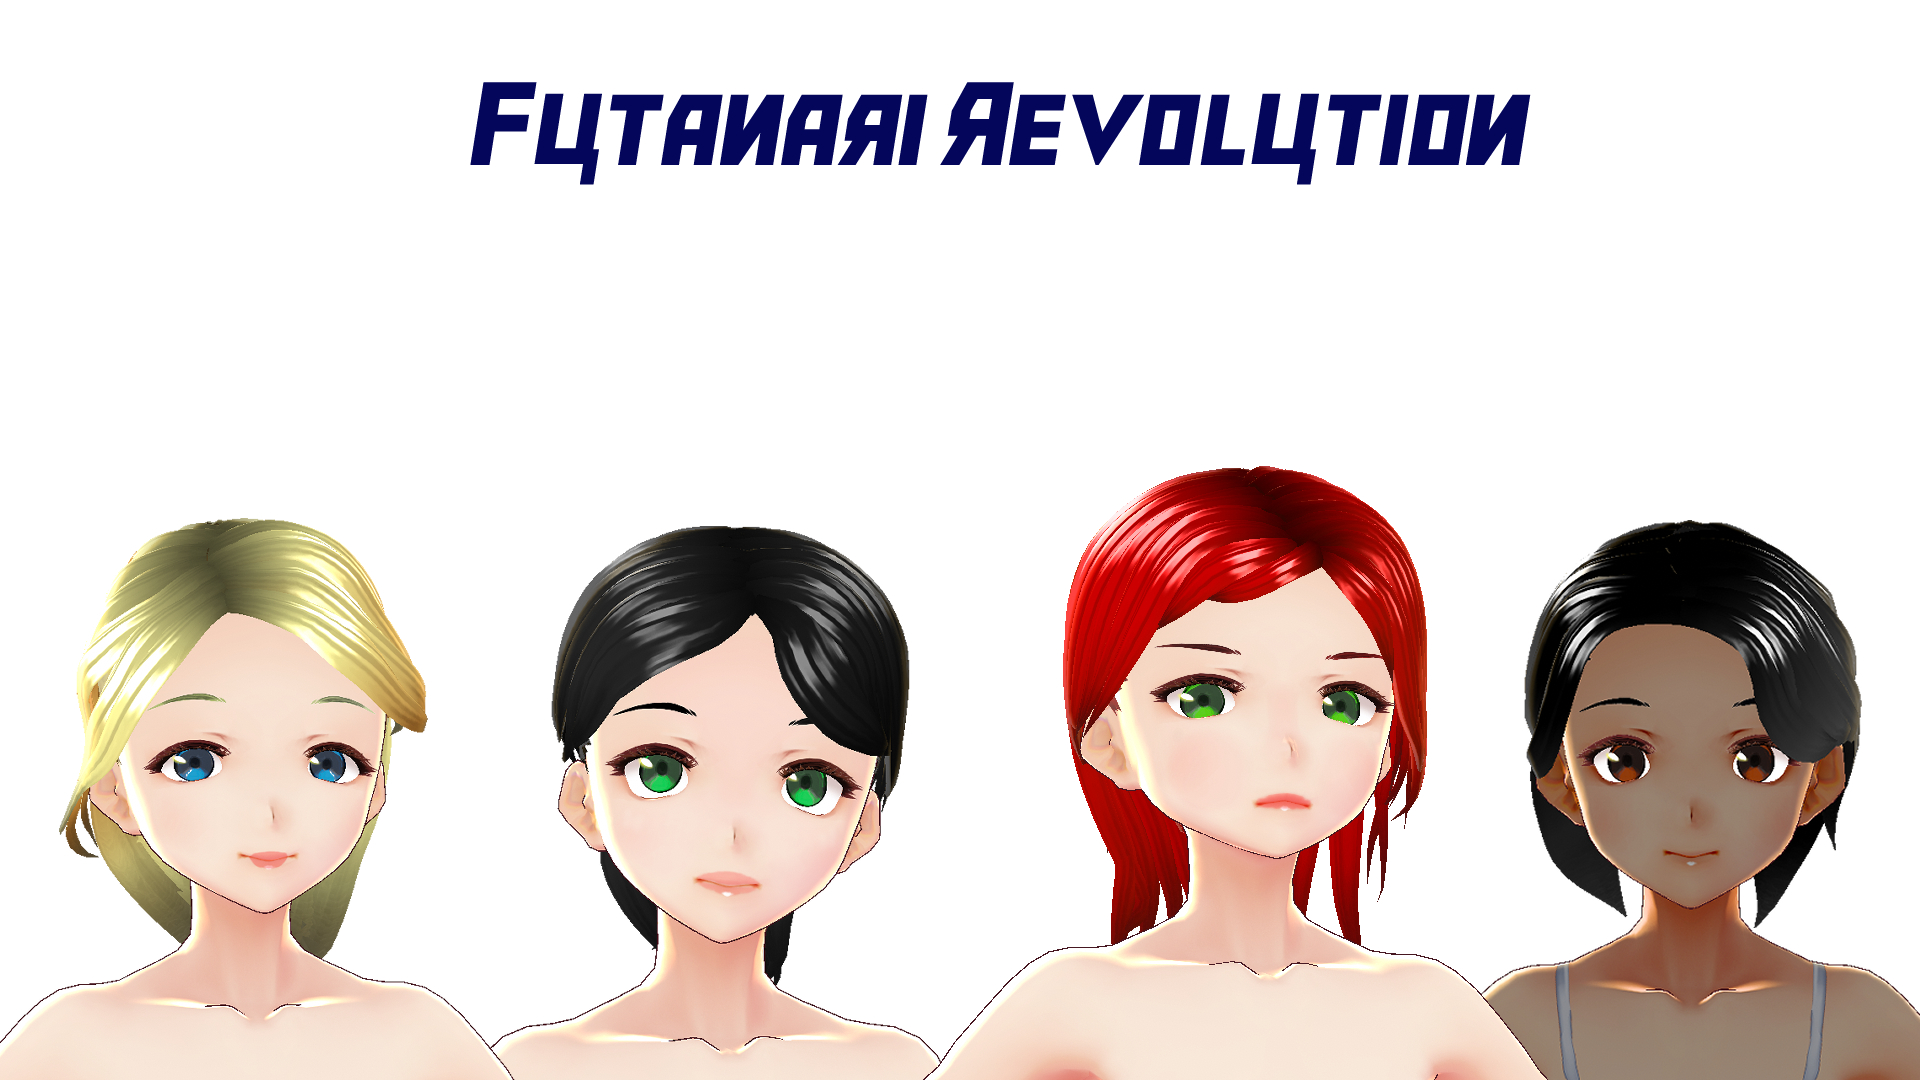 Futanari Revolution [v0.2] main image